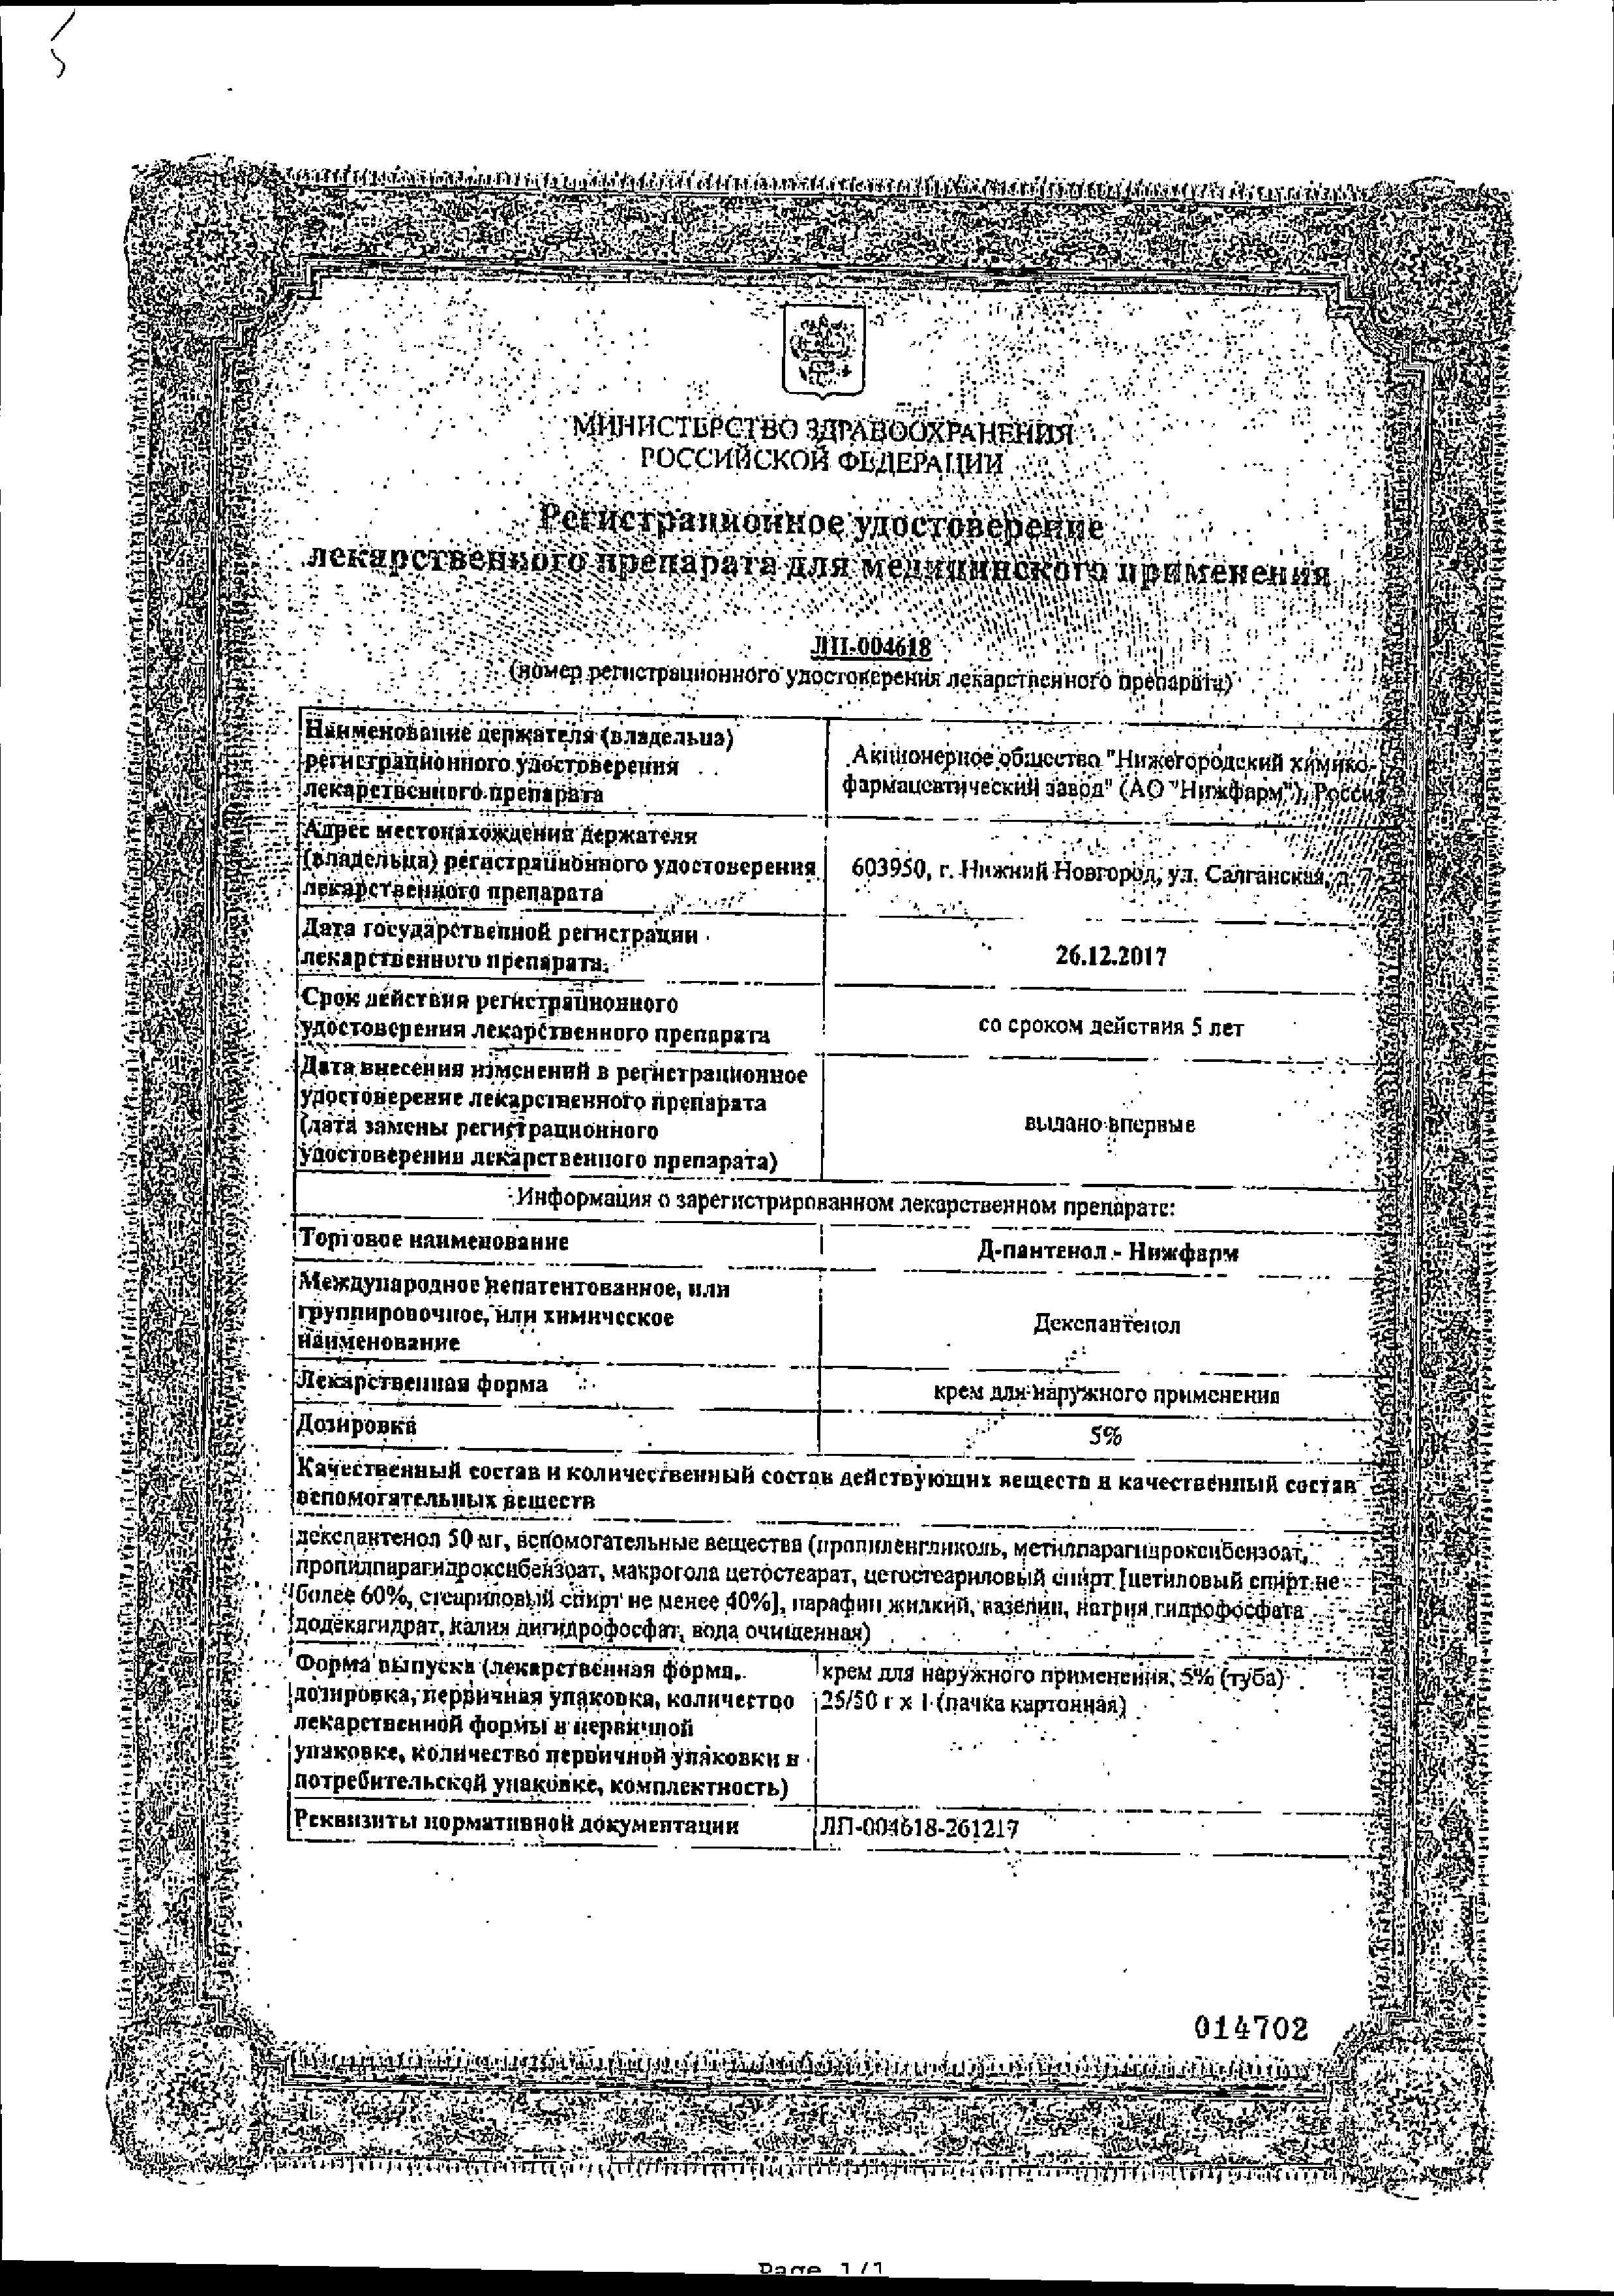 Д-Пантенол-Нижфарм сертификат